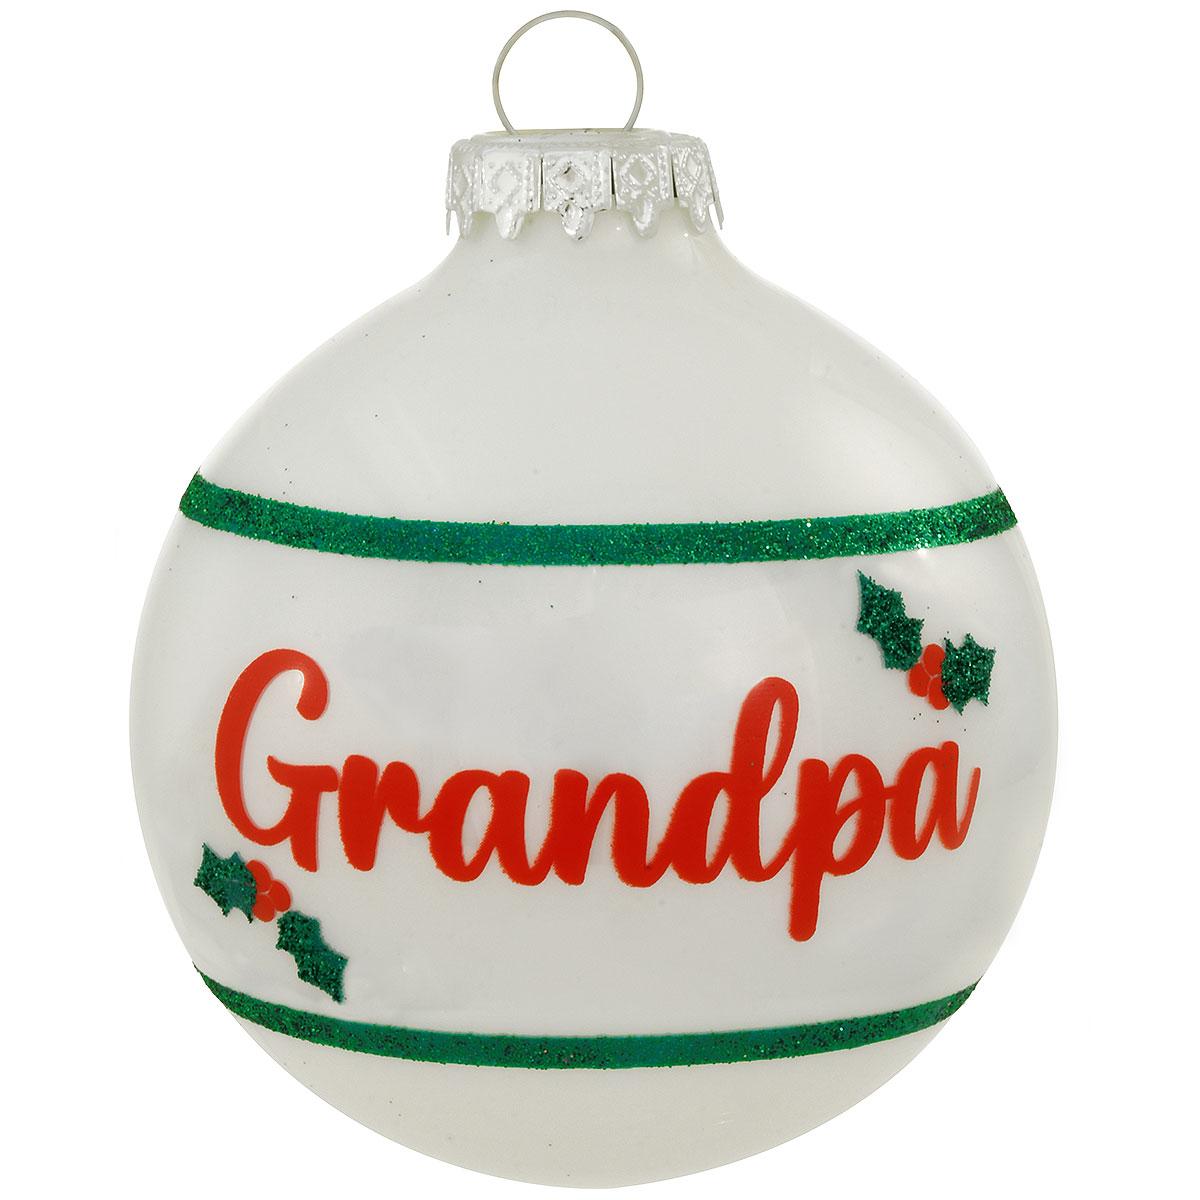 Grandpa Glass Ornament